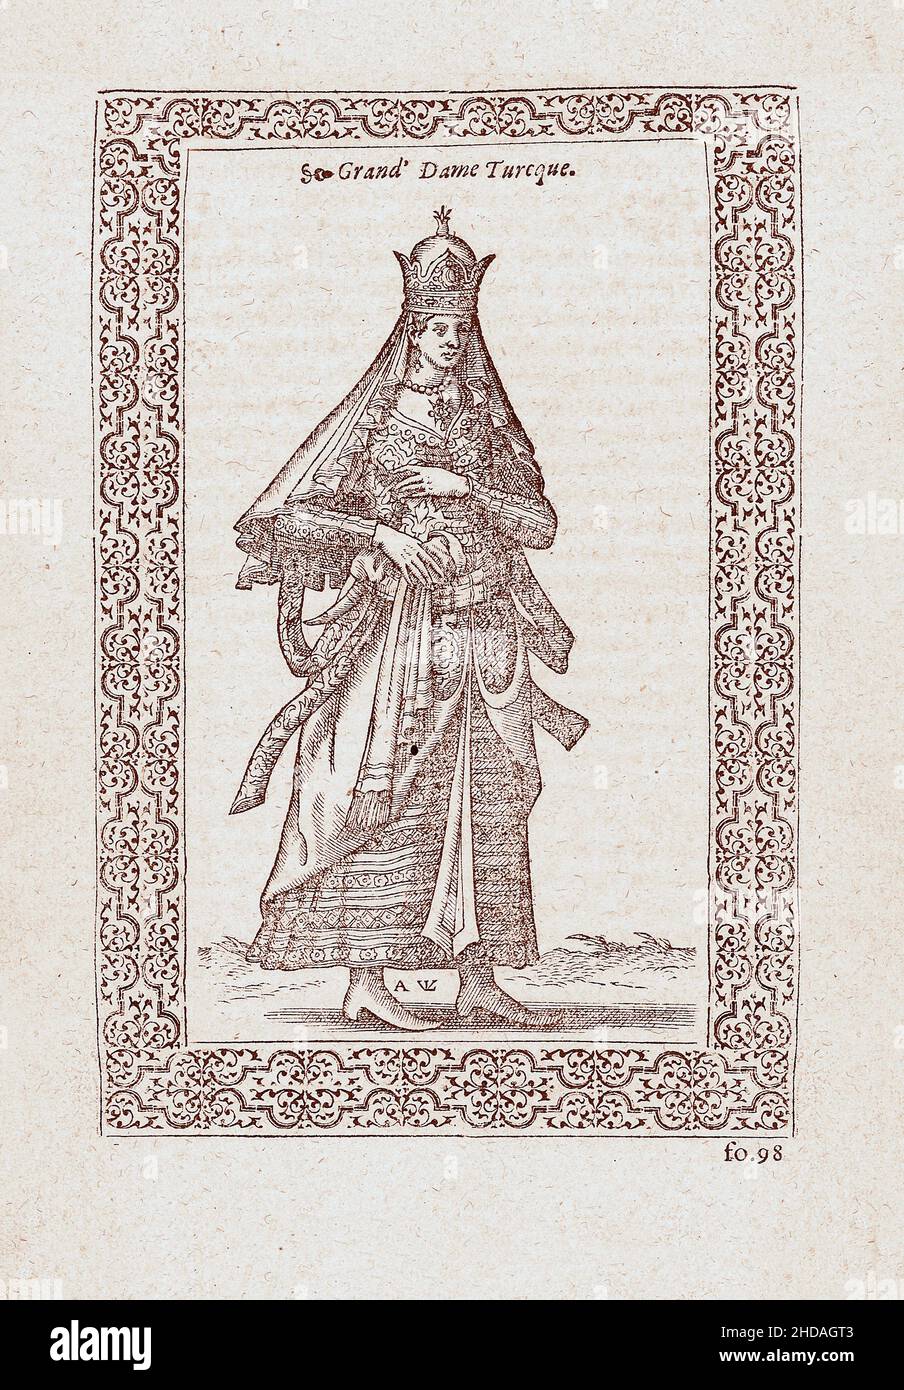 La gravure du 16th siècle de la femme turque de haut rang.1577 par Nicolas de Nicolay (1517-1583) Banque D'Images